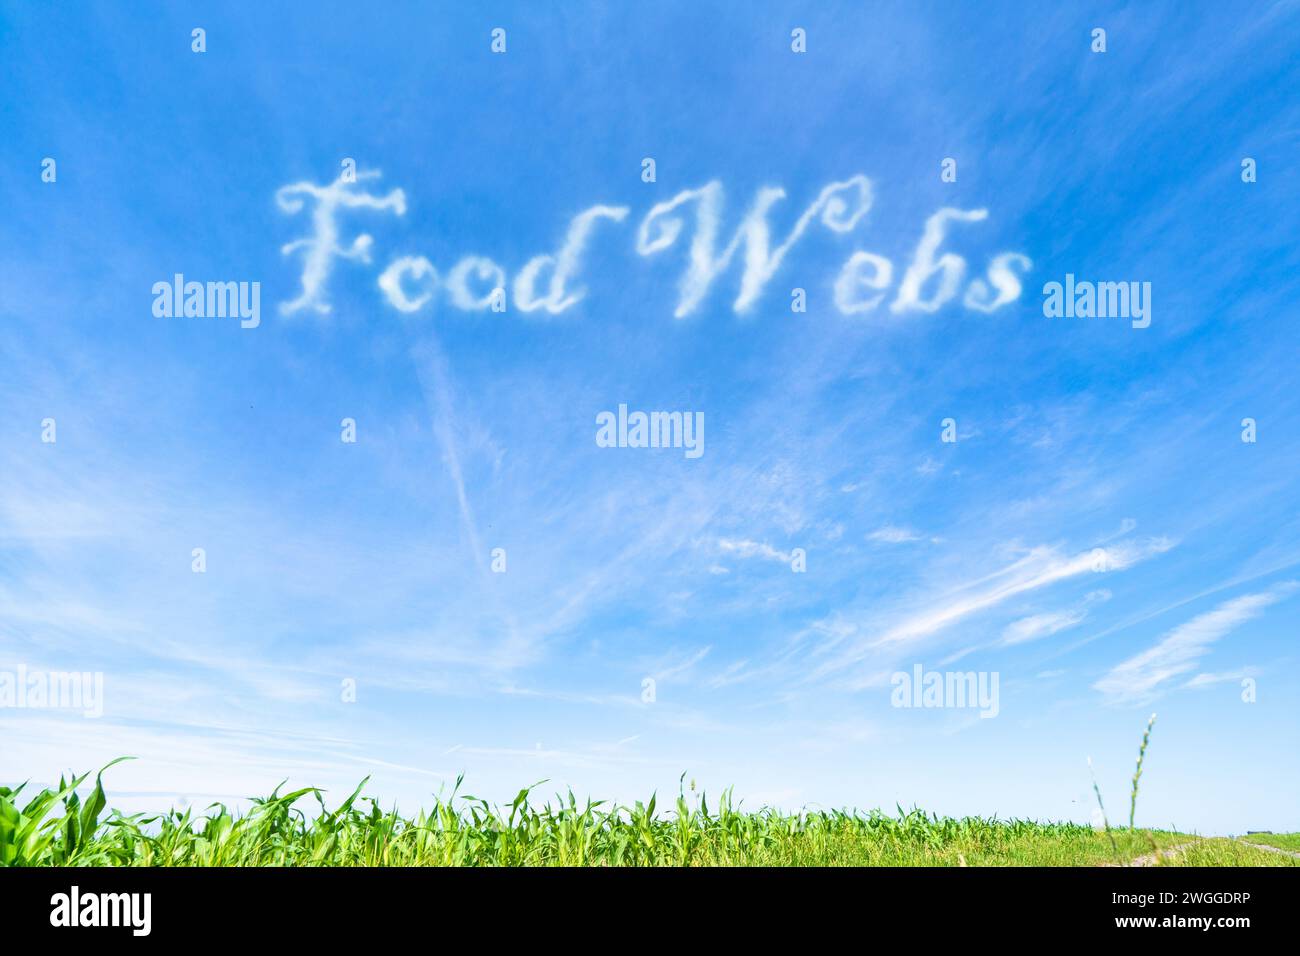 Lebensmittelnetze: Komplexe Verflechtungen von Lebensmittelketten, die den Energiefluss in Ökosystemen veranschaulichen. Stockfoto